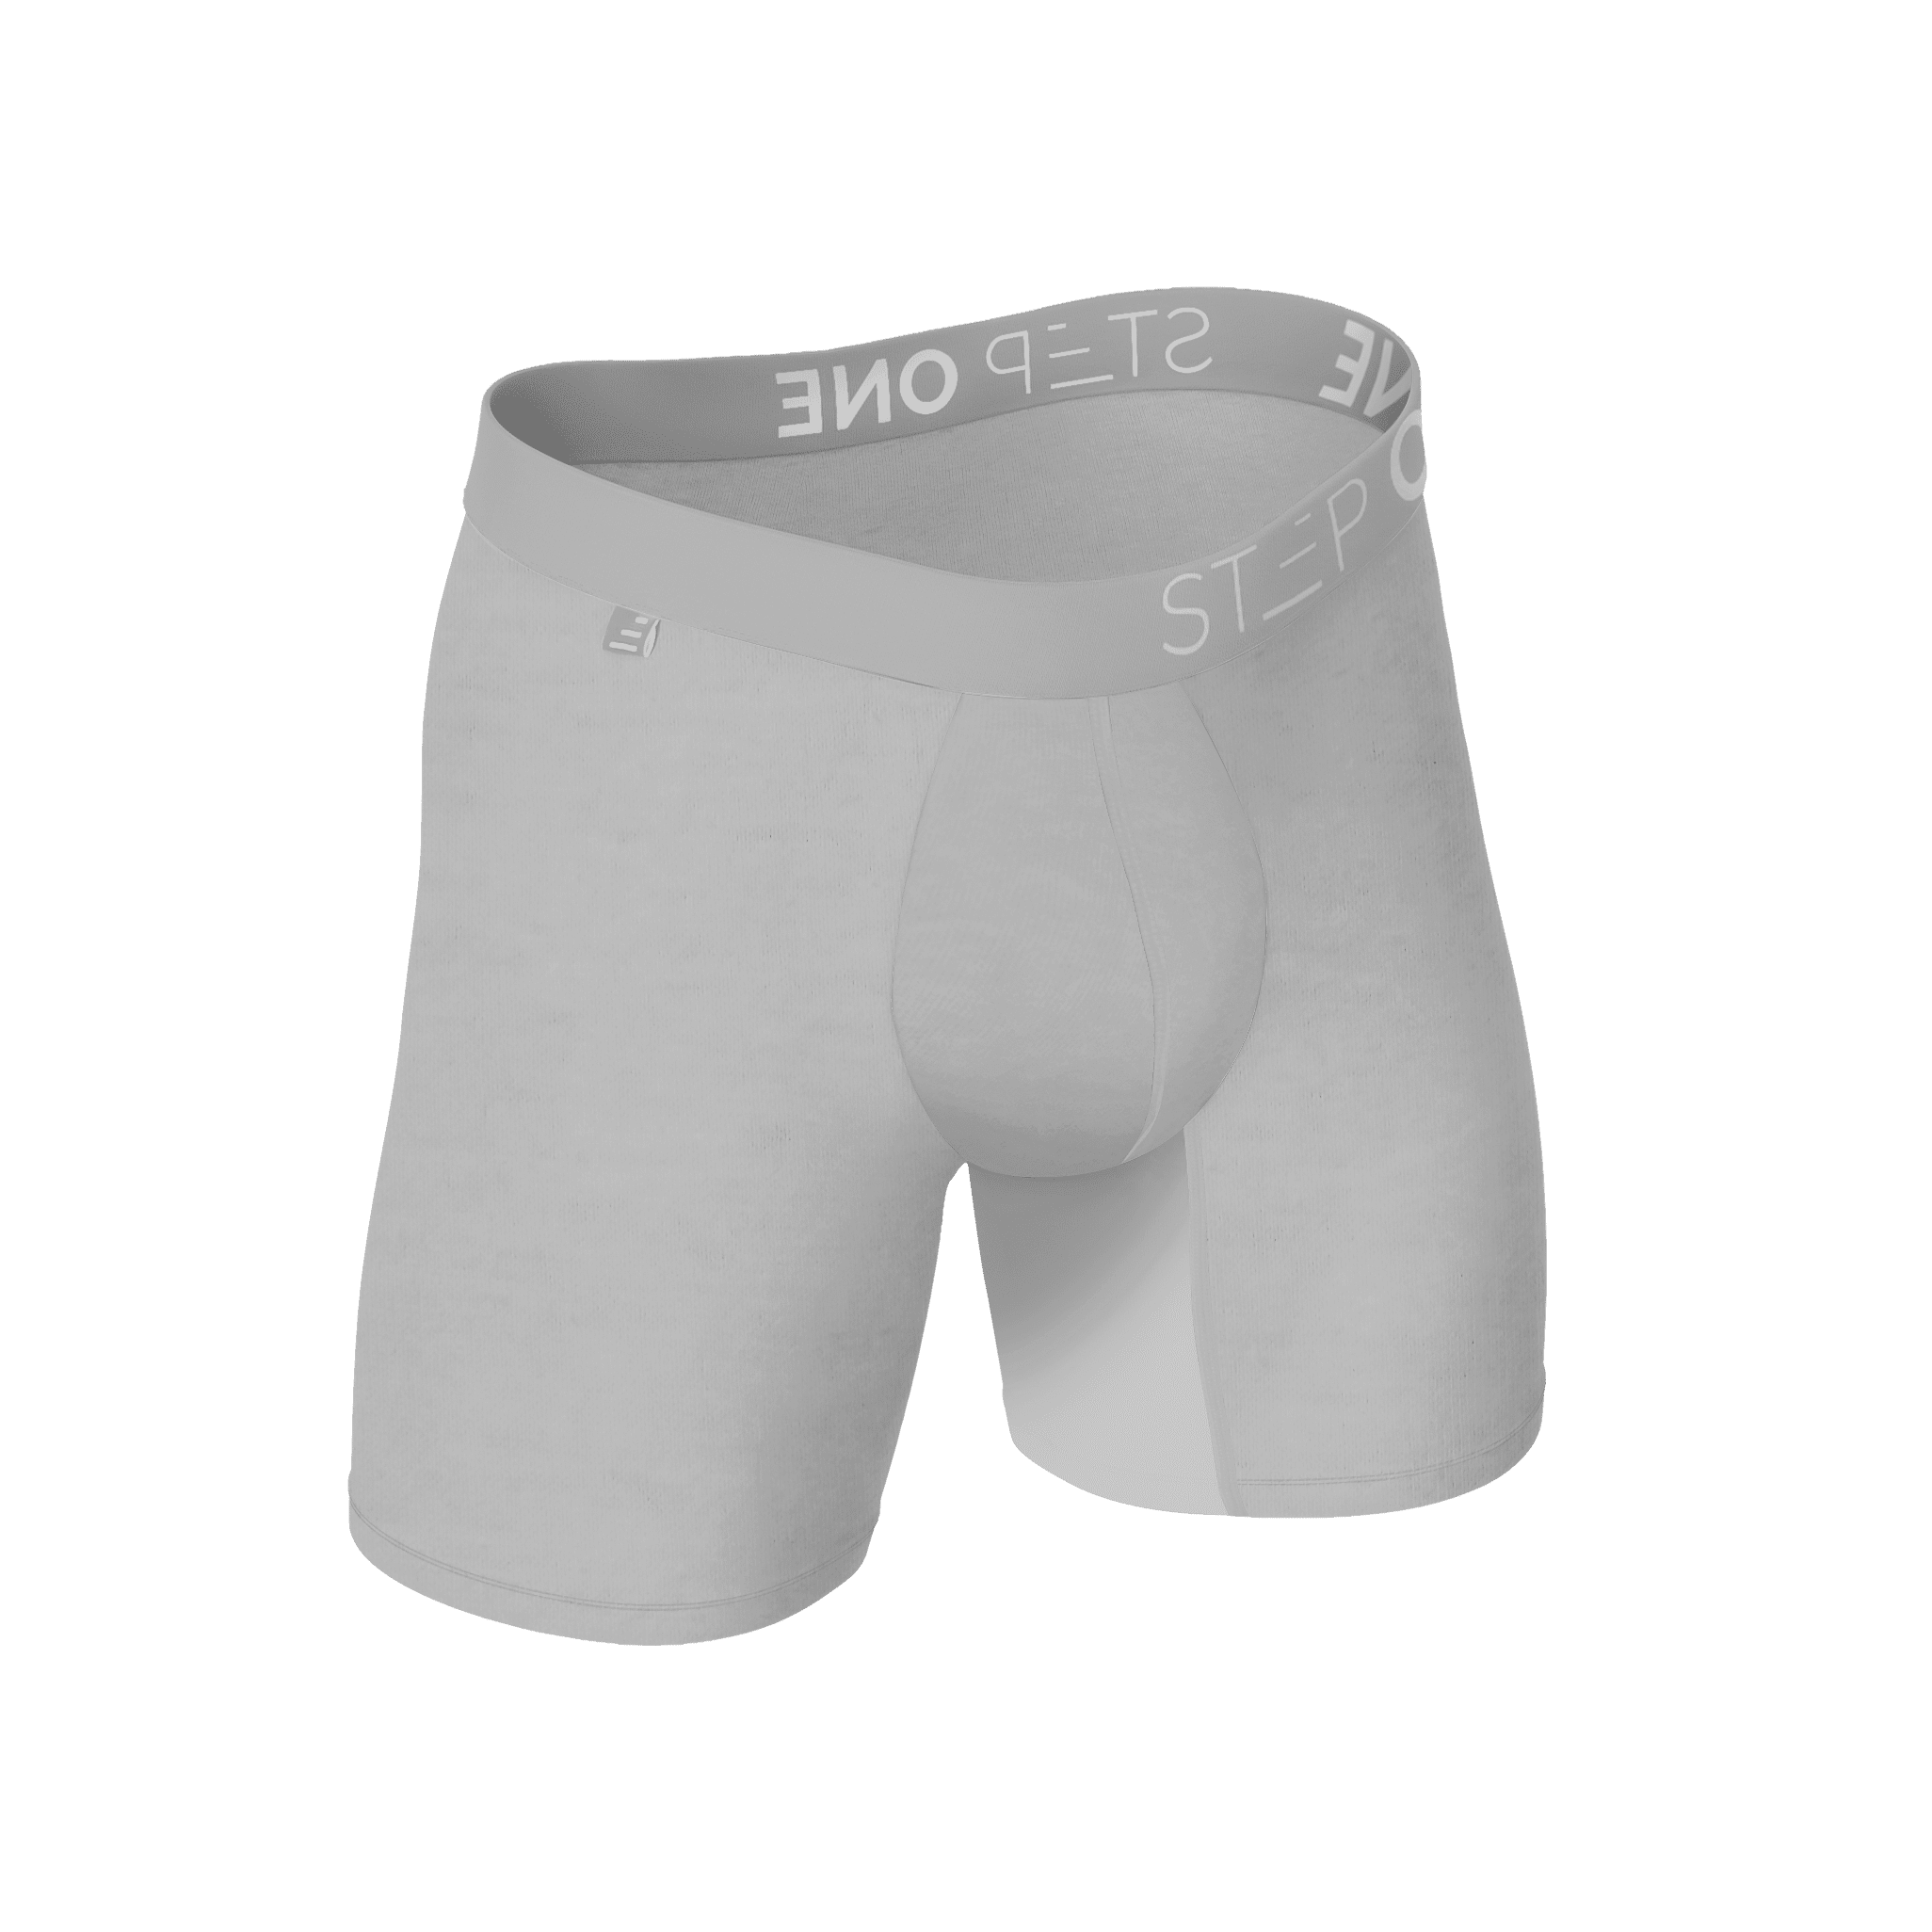 Boxer Brief - Sandipants  Step One Men's Underwear US